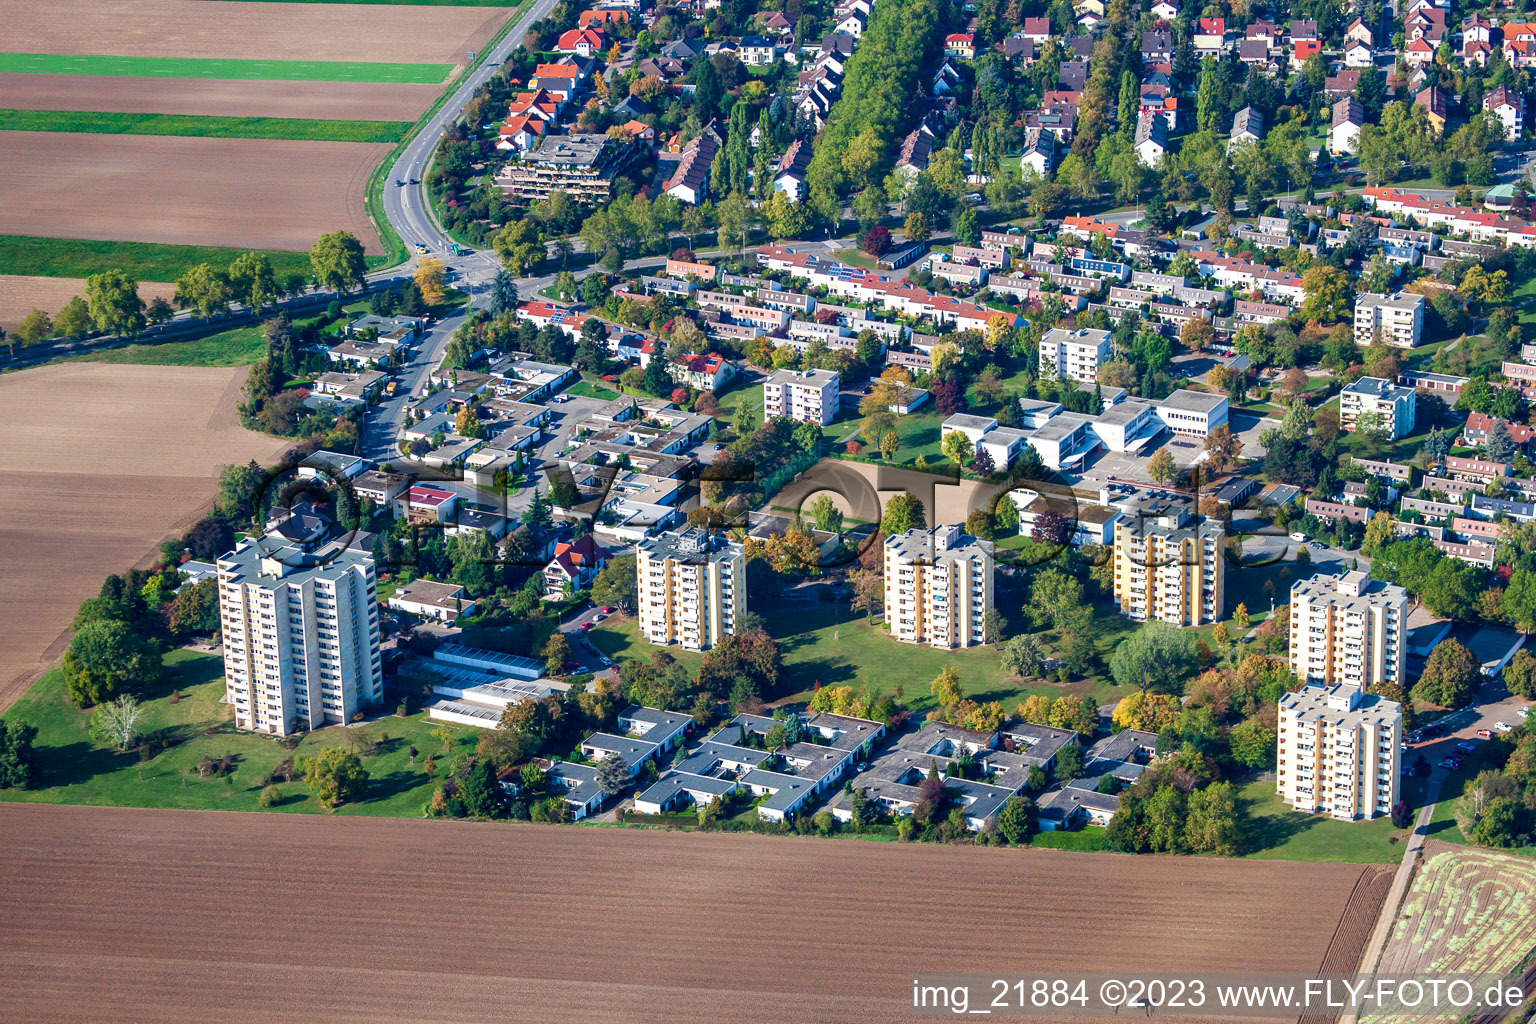 Vue aérienne de Sud, anneau Carl Bosch à Frankenthal dans le département Rhénanie-Palatinat, Allemagne